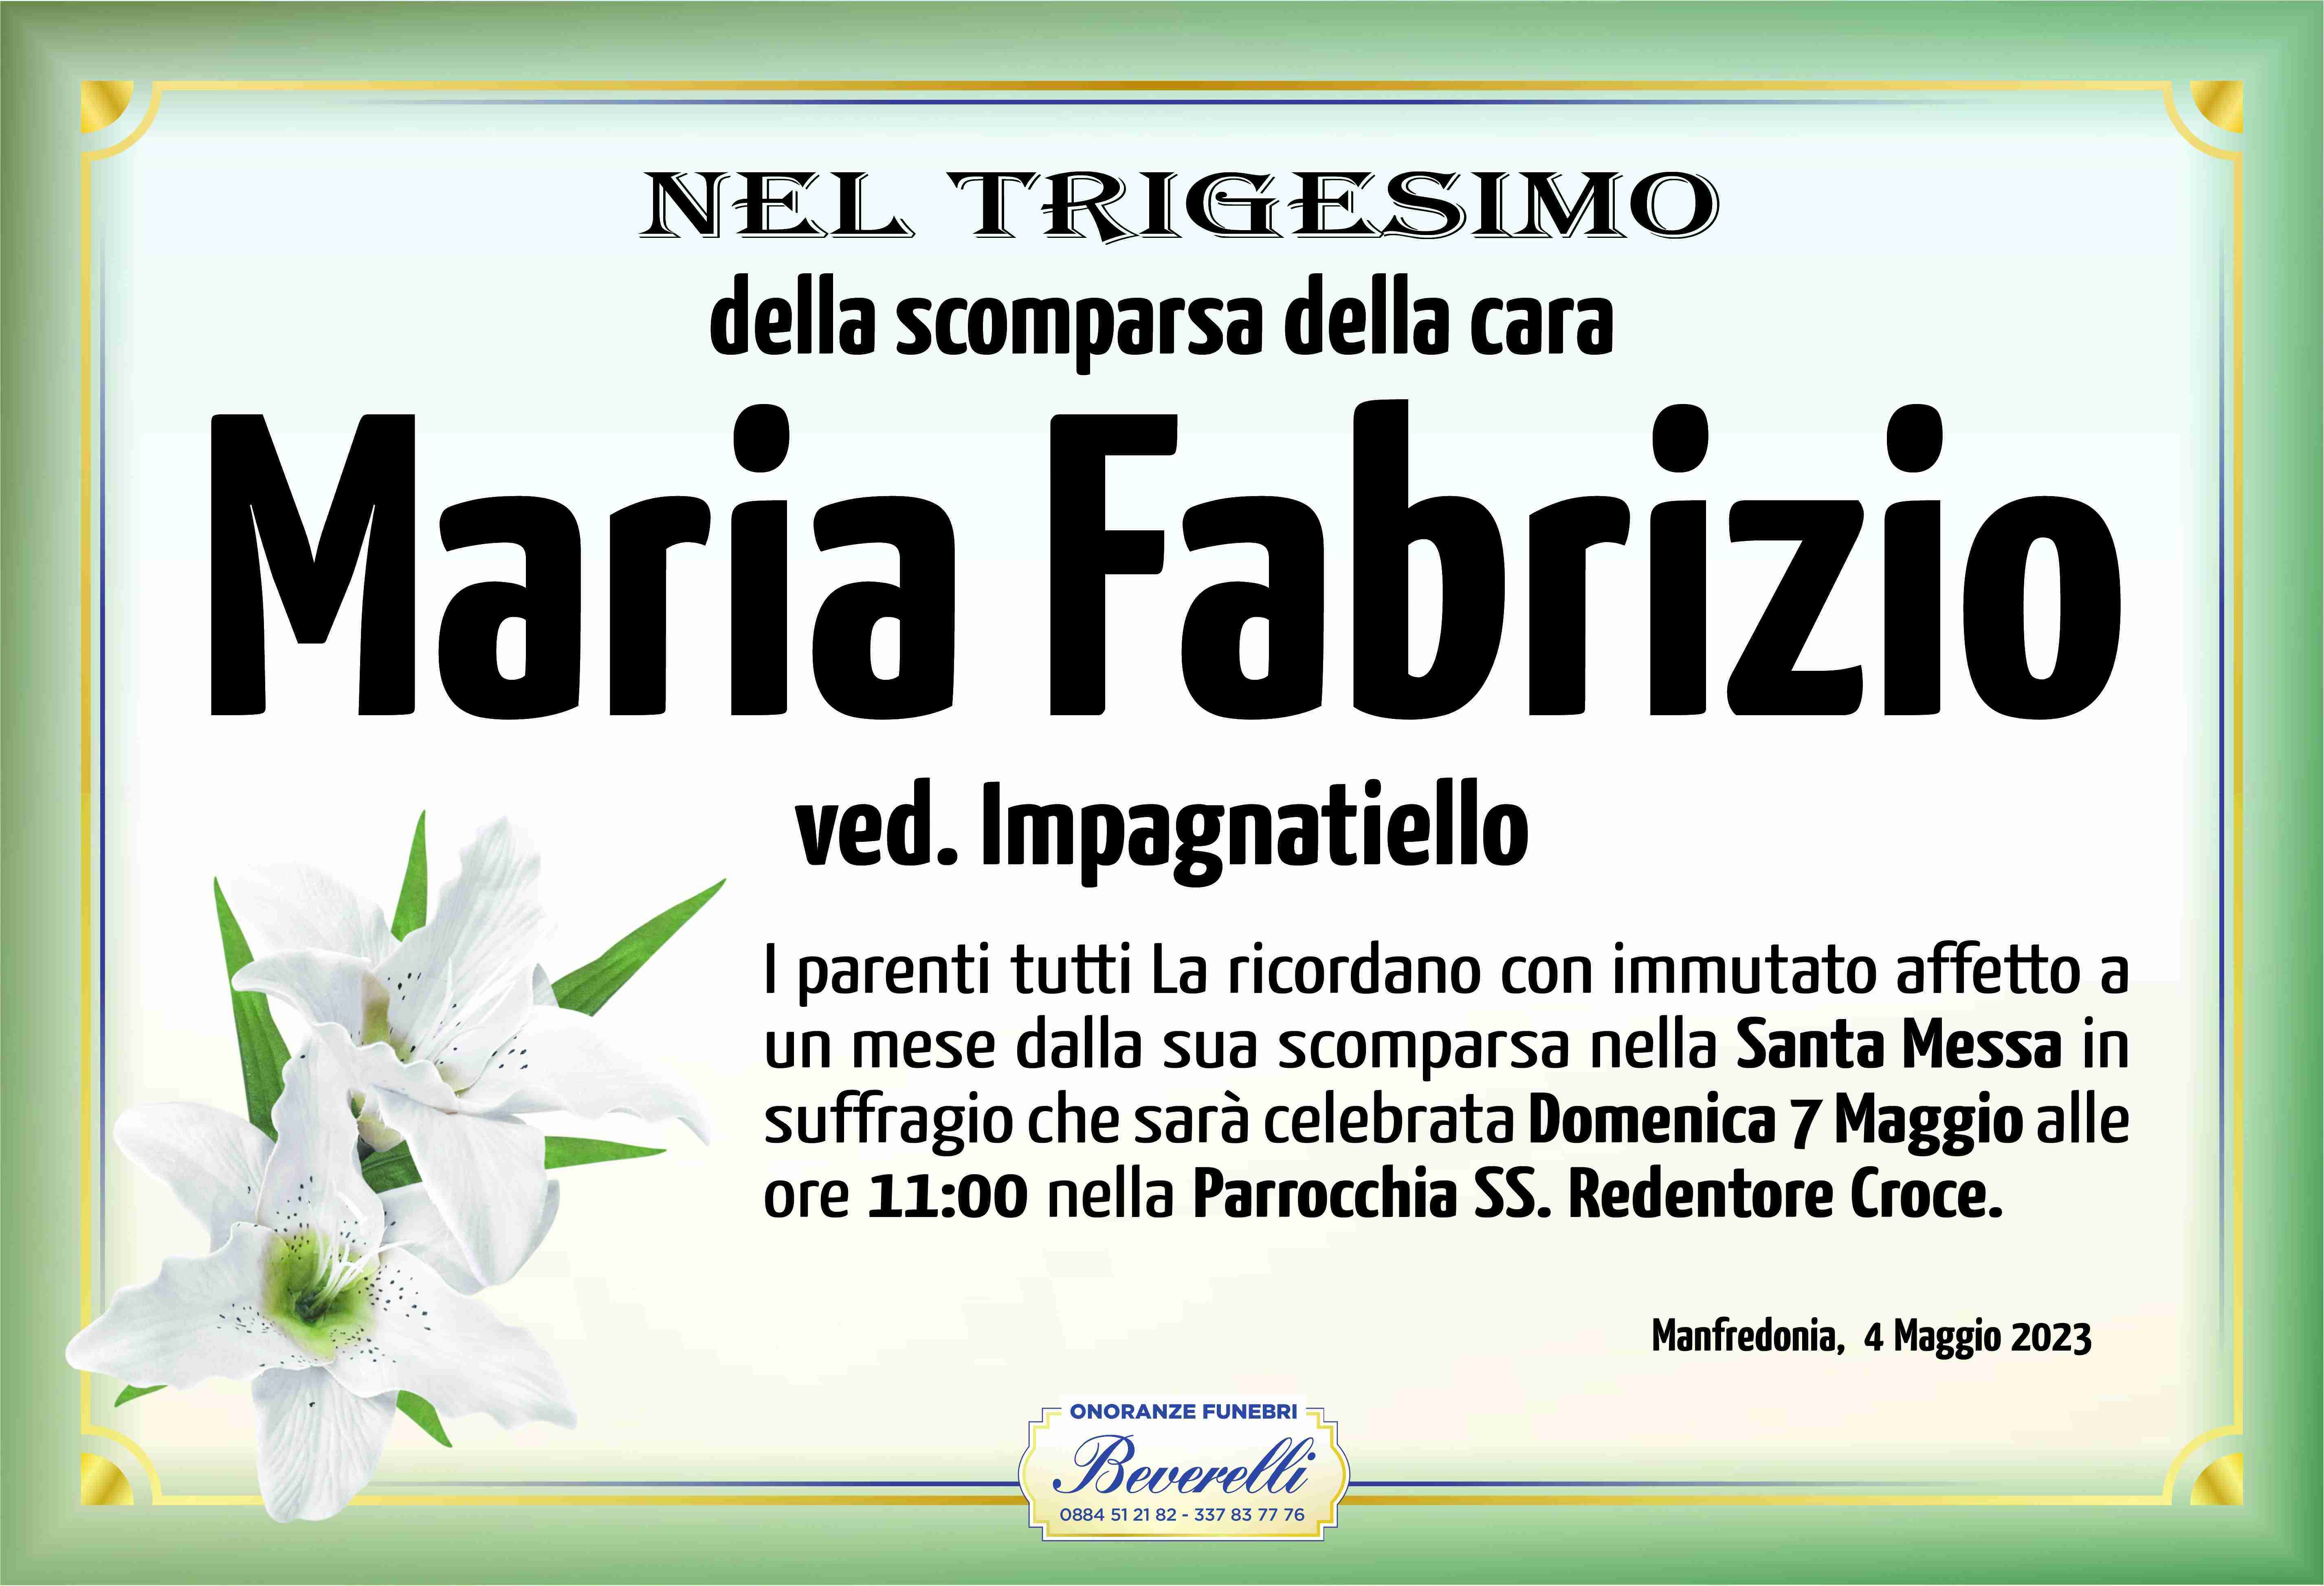 Maria Fabrizio